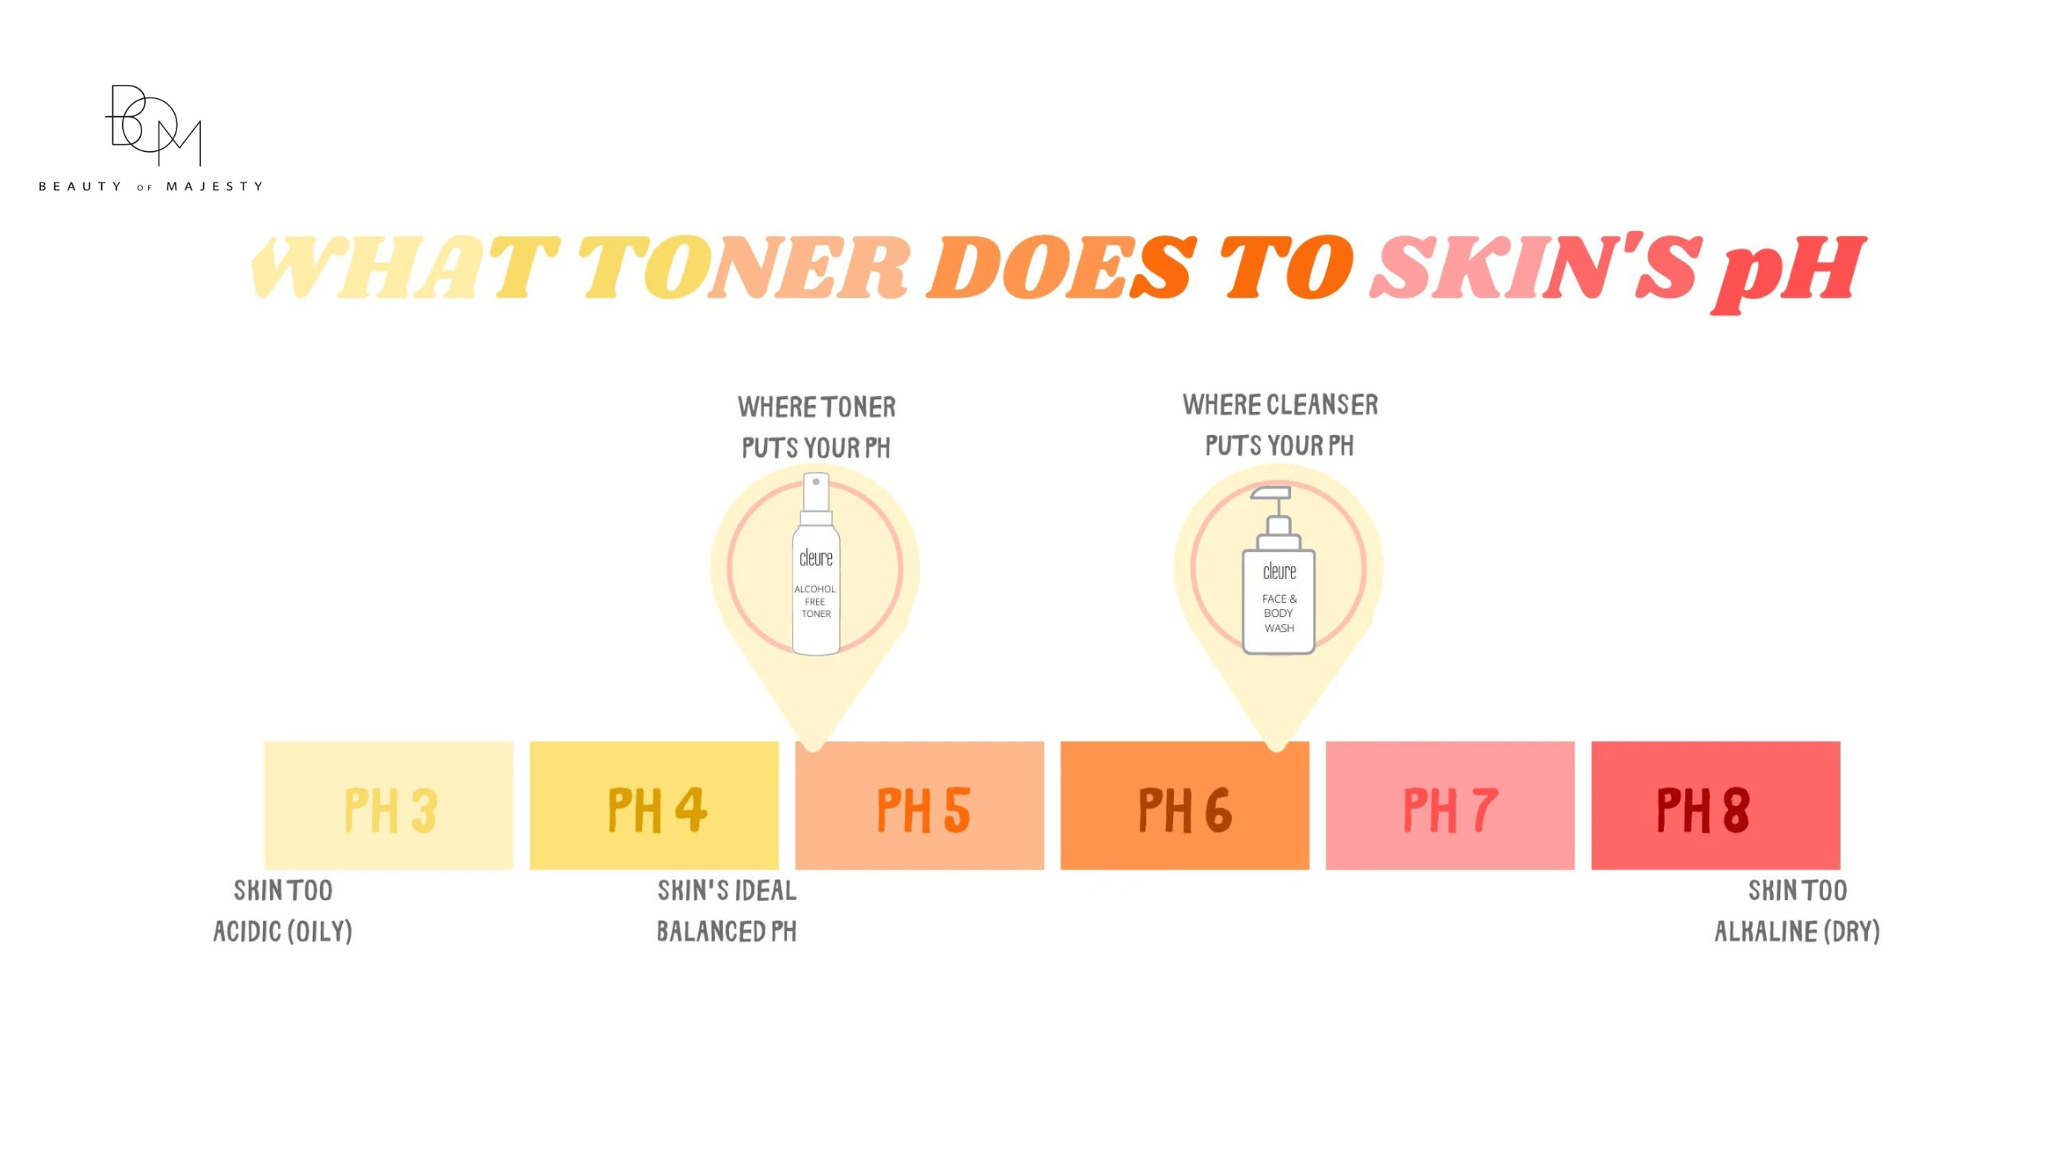 Một trong những chức năng của toner sau bước làm sạch chính là đưa da trở lại độ pH tự nhiên.